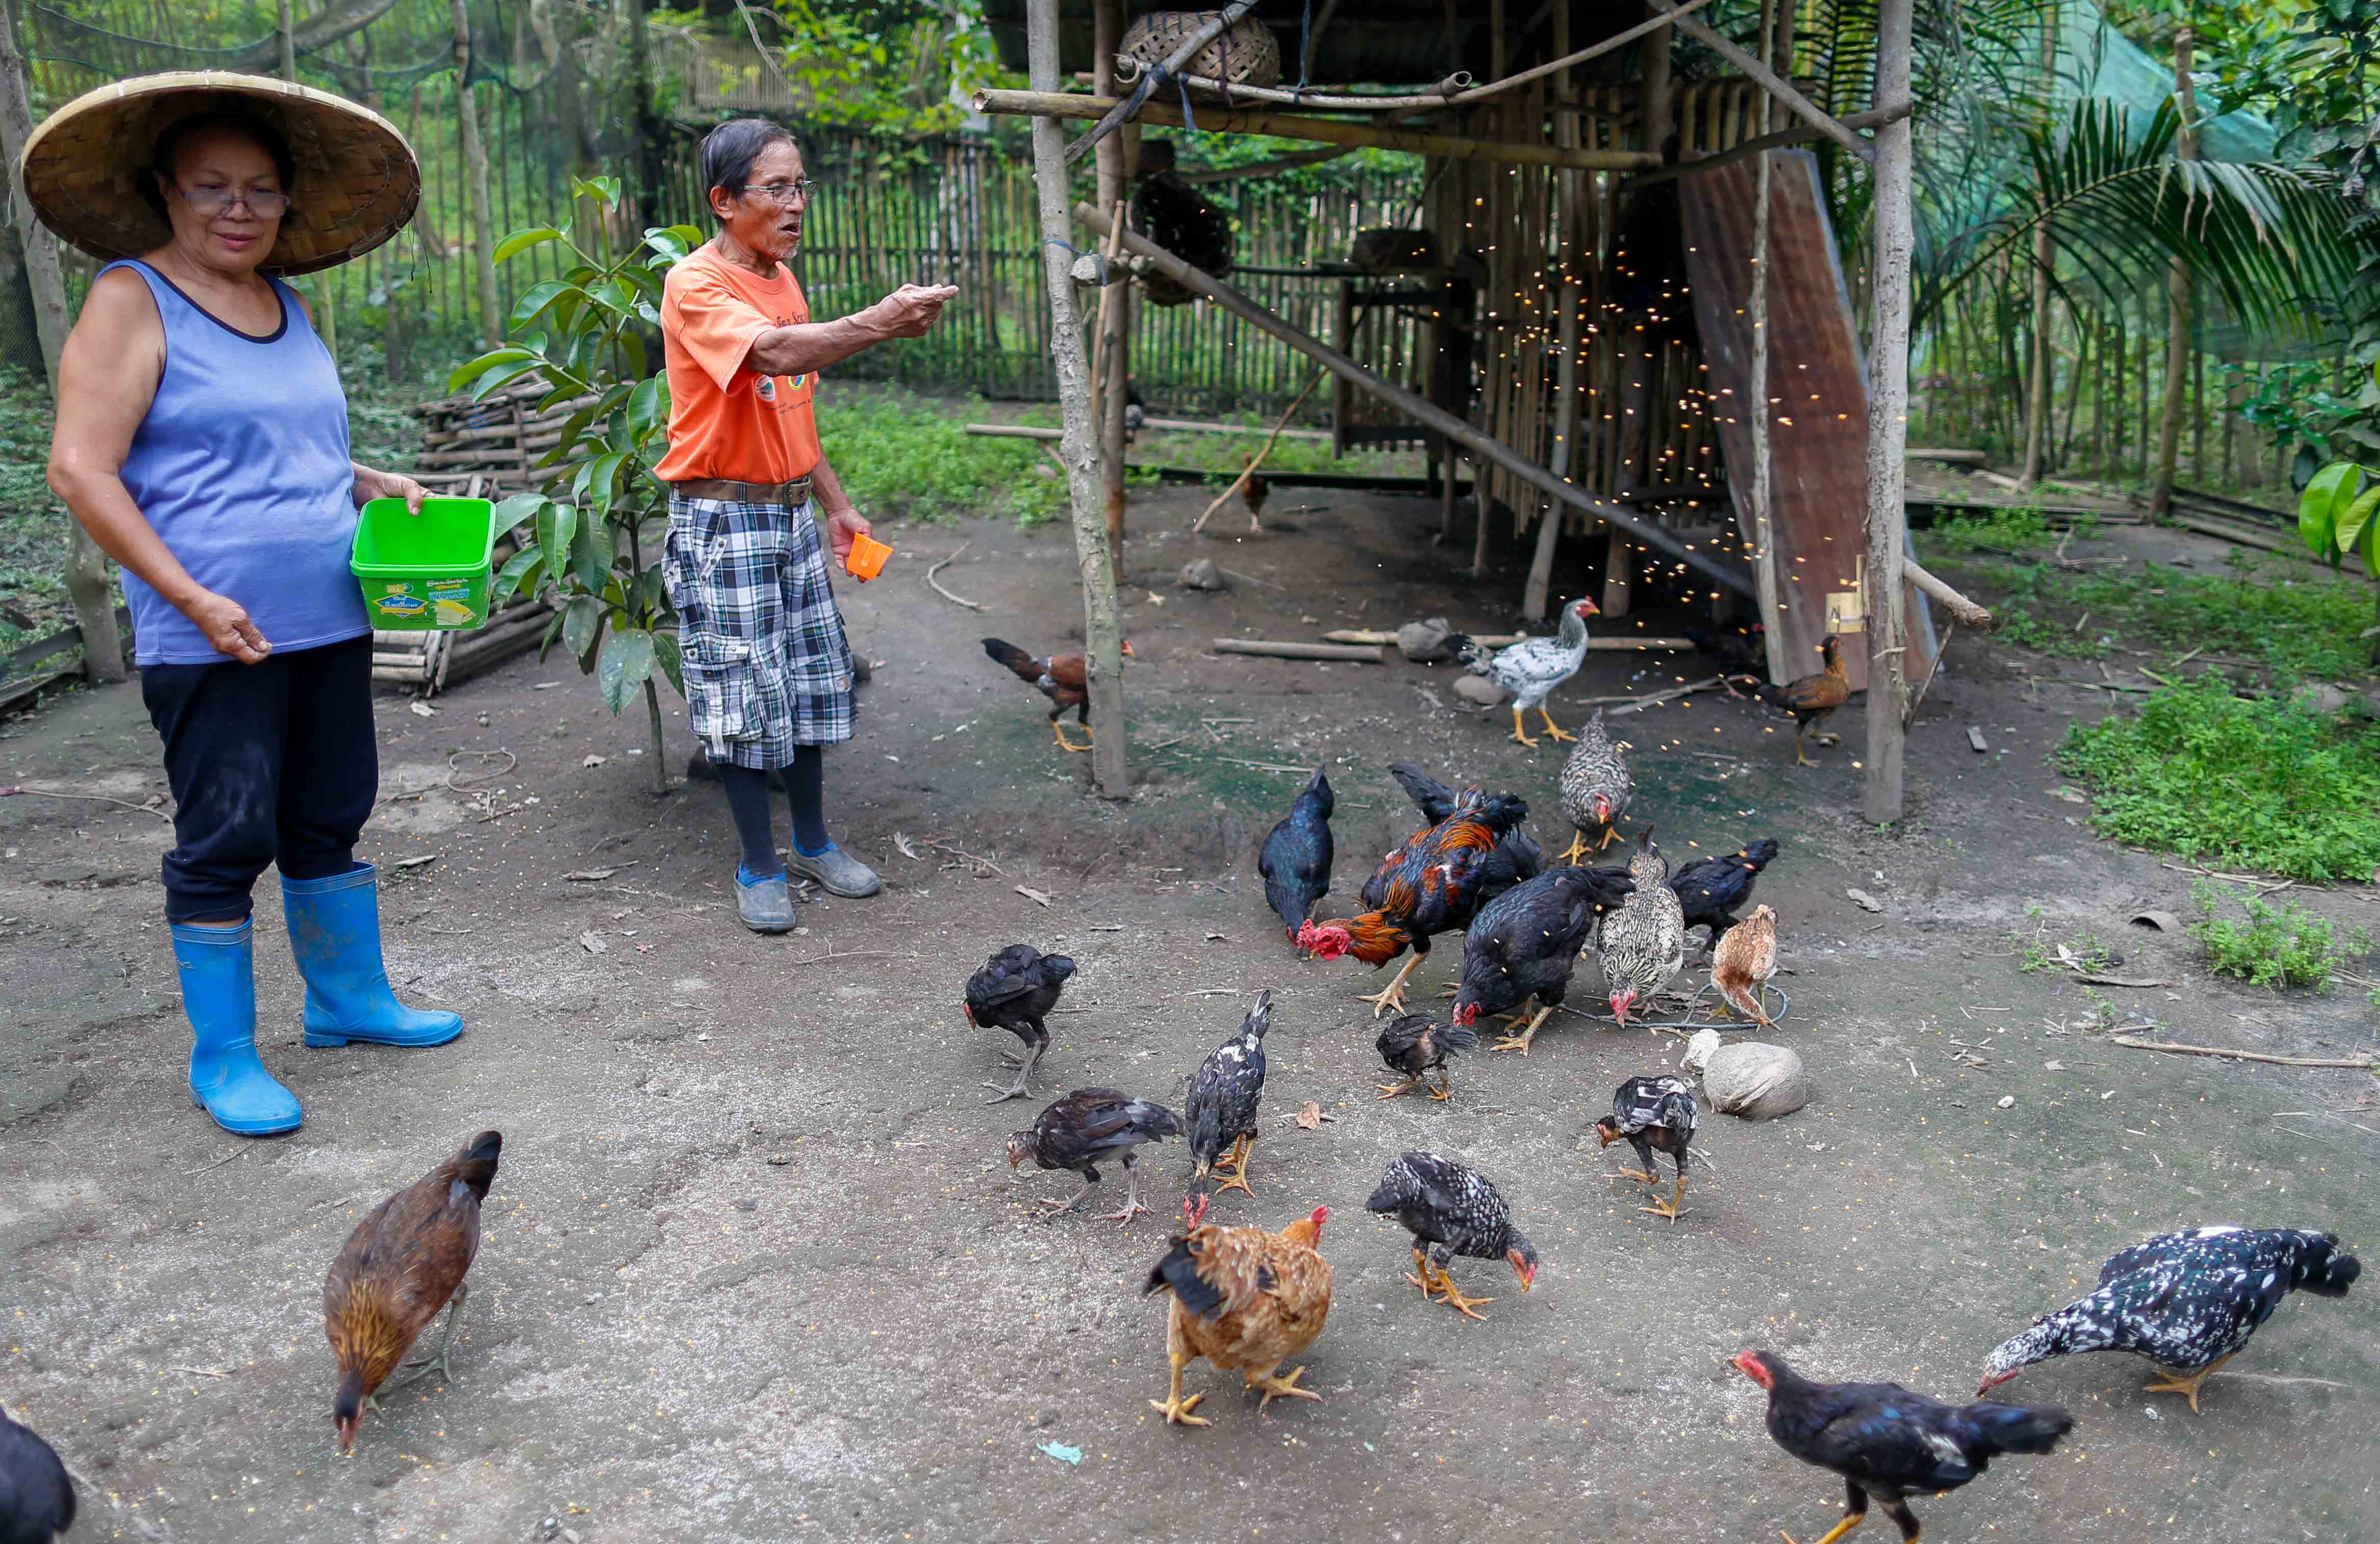 Farmers feeding chickens